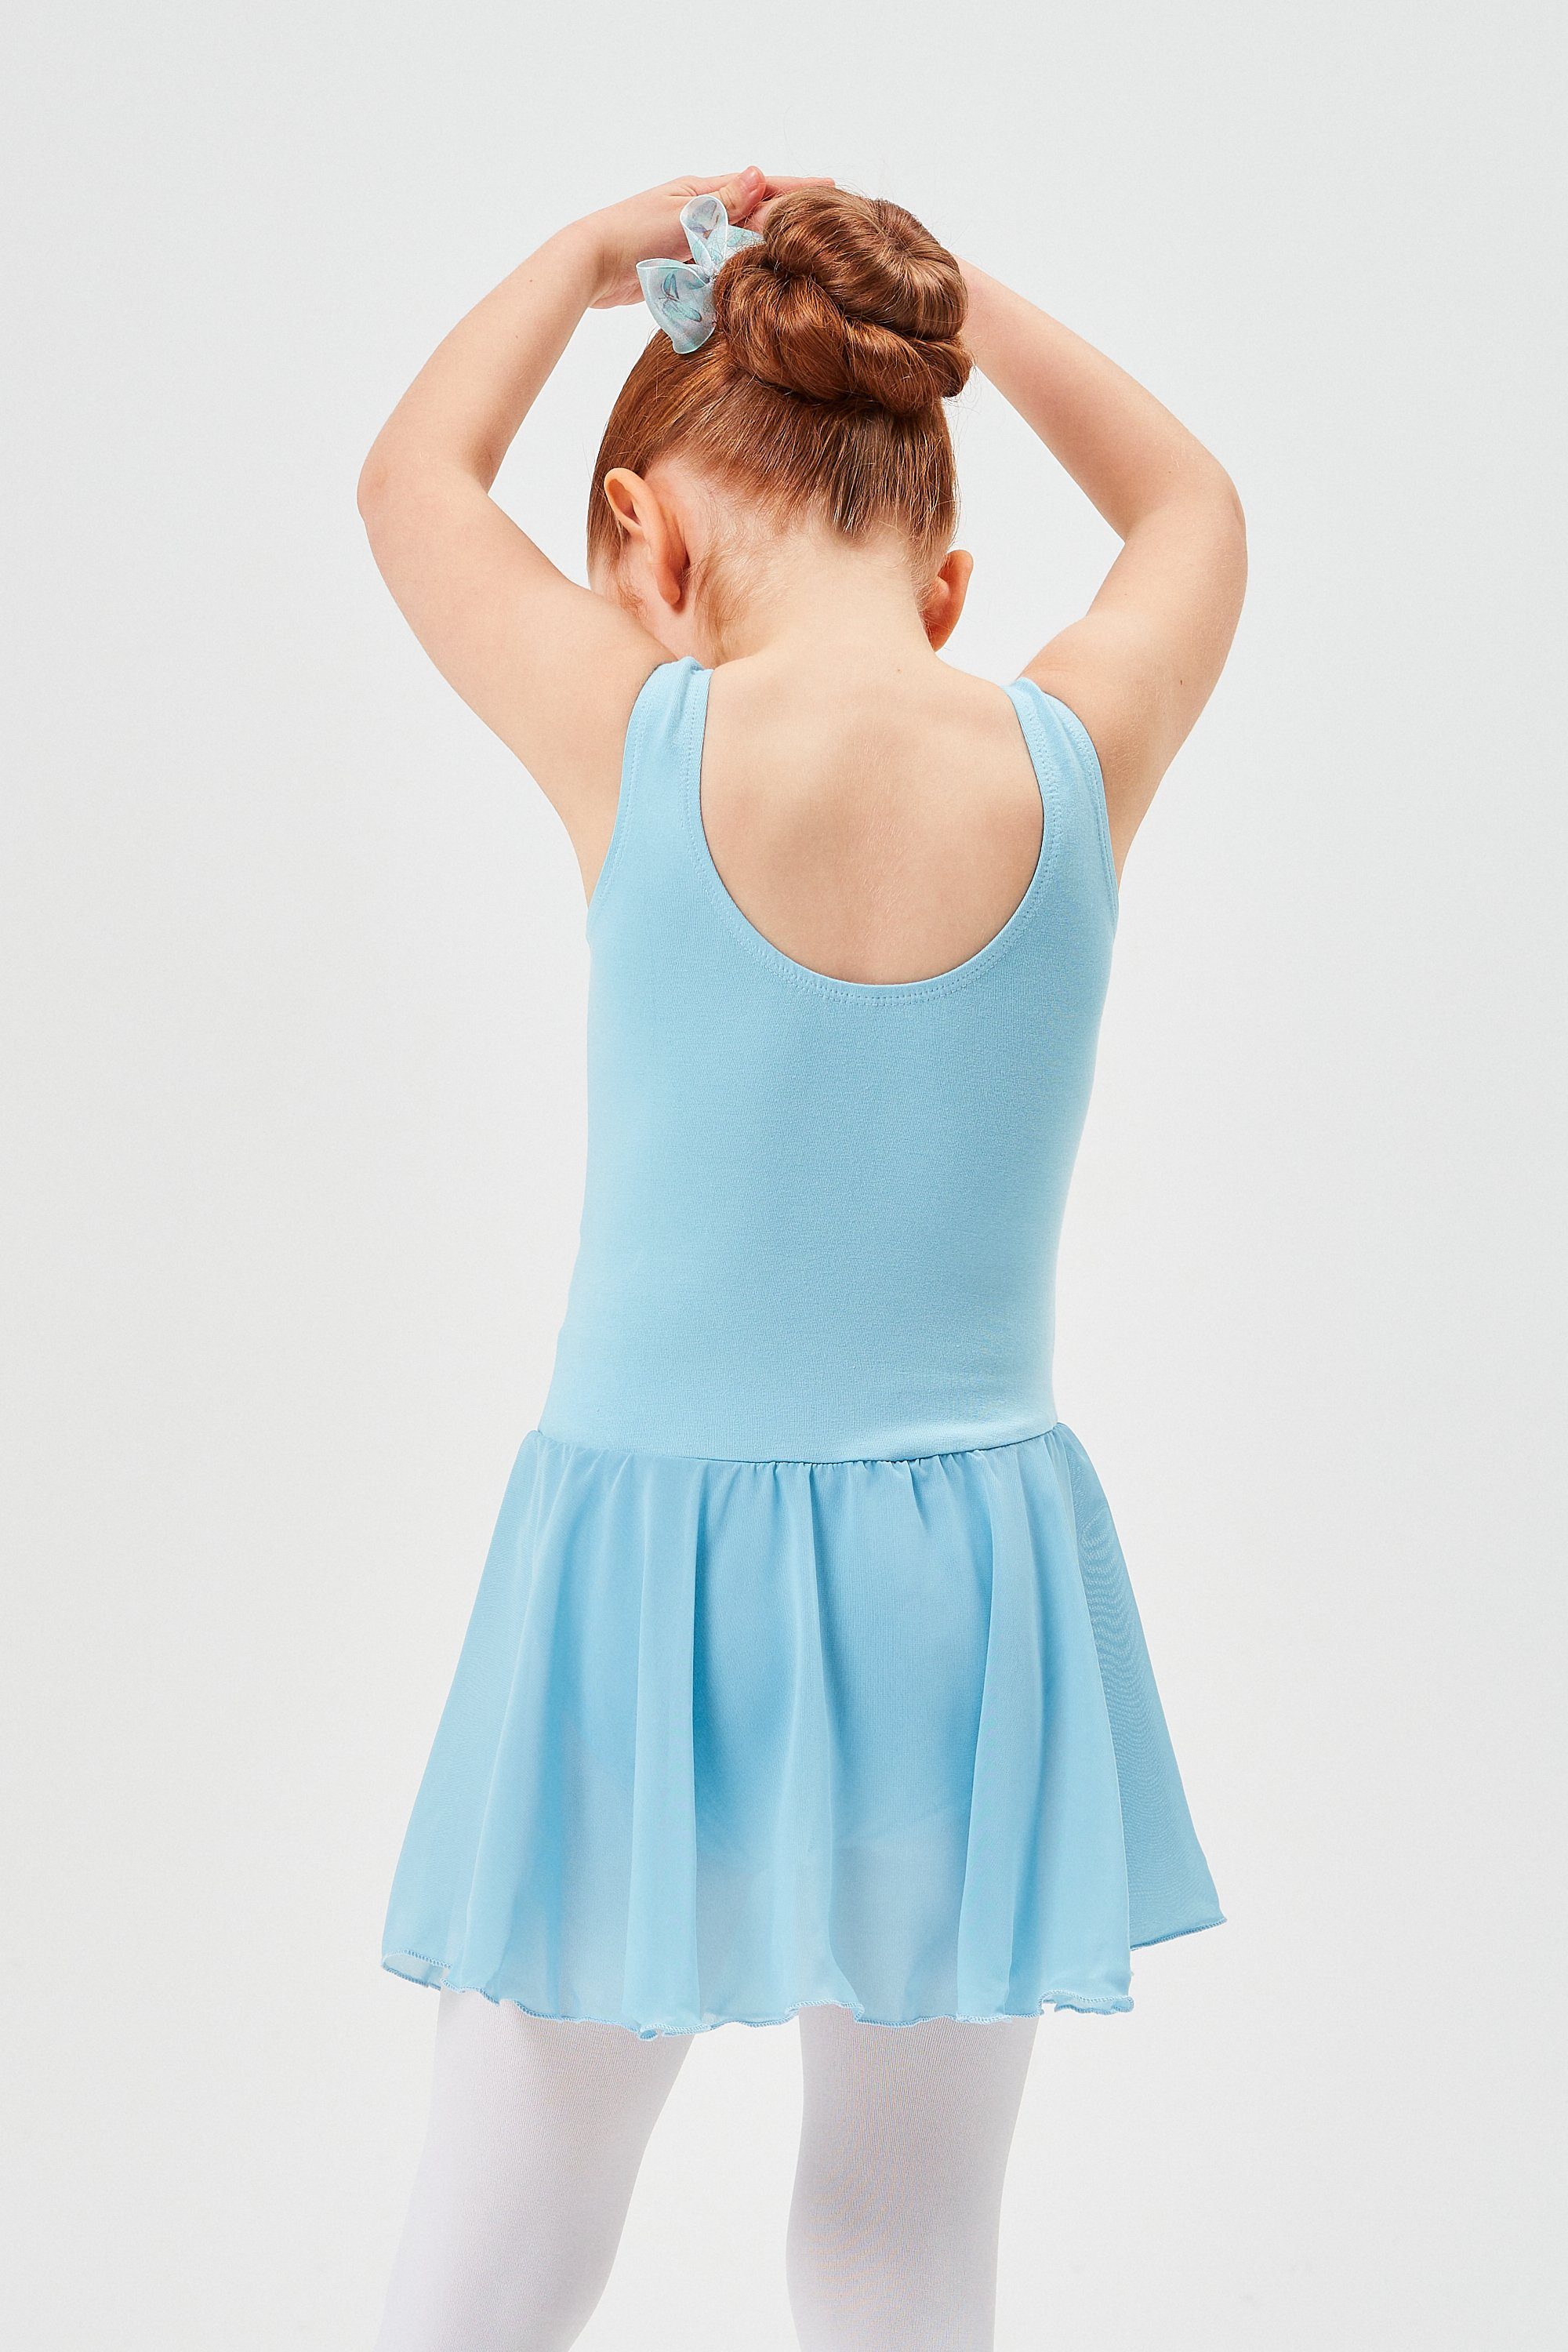 tanzmuster für Chiffon Ballettkleid hellblau Ballett wunderbar Chiffonkleid Trikot aus weichem Röckchen Minnie mit Baumwollmaterial Mädchen